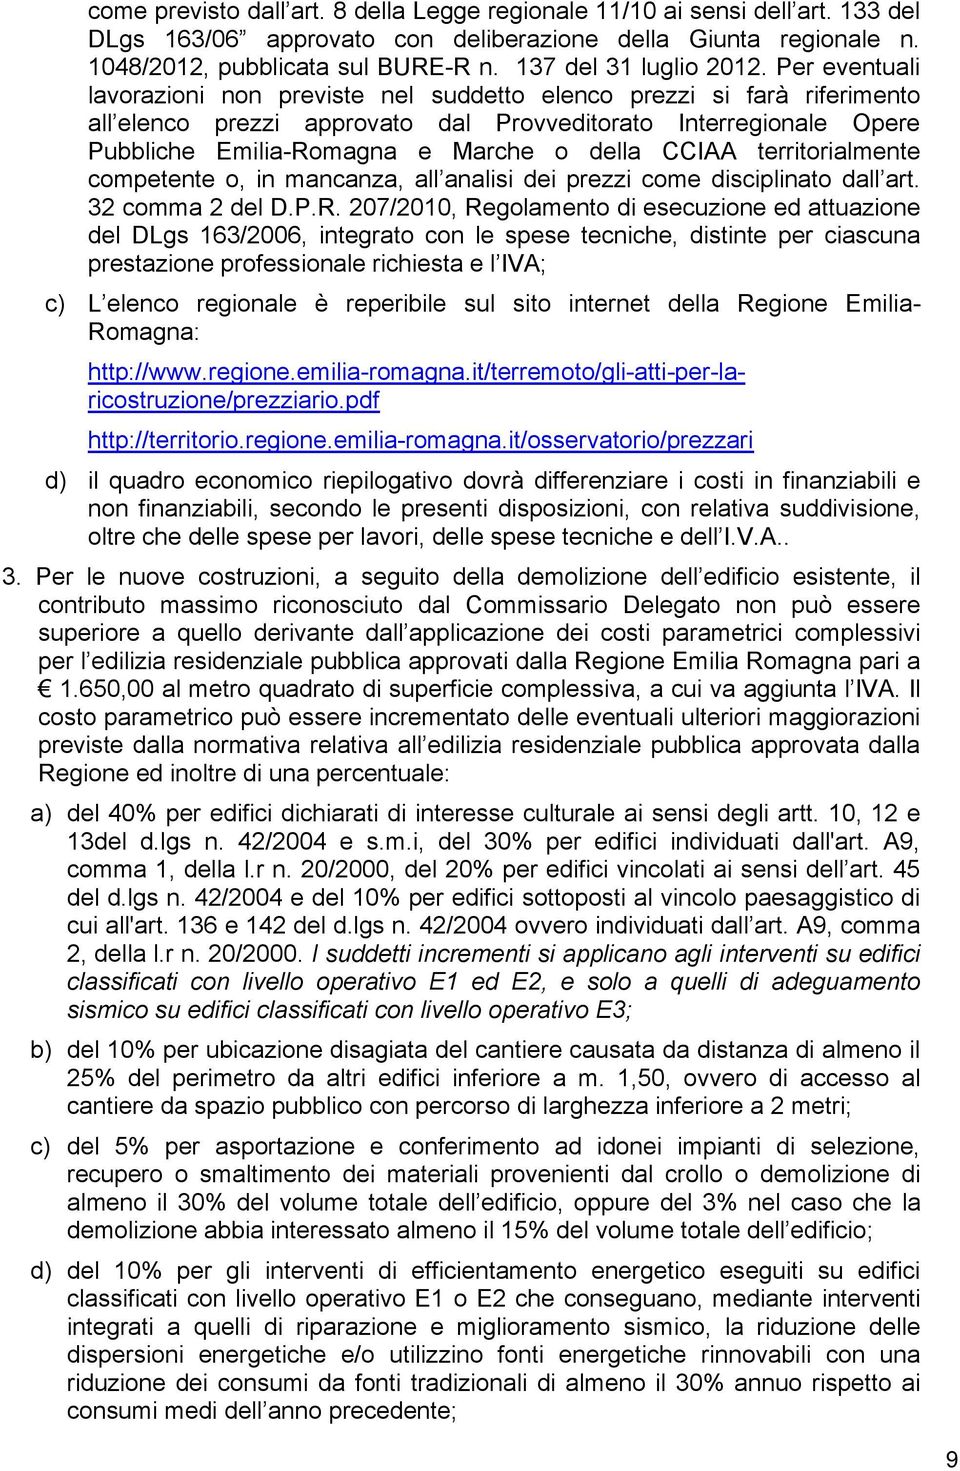 Per eventuali lavorazioni non previste nel suddetto elenco prezzi si farà riferimento all elenco prezzi approvato dal Provveditorato Interregionale Opere Pubbliche Emilia-Romagna e Marche o della